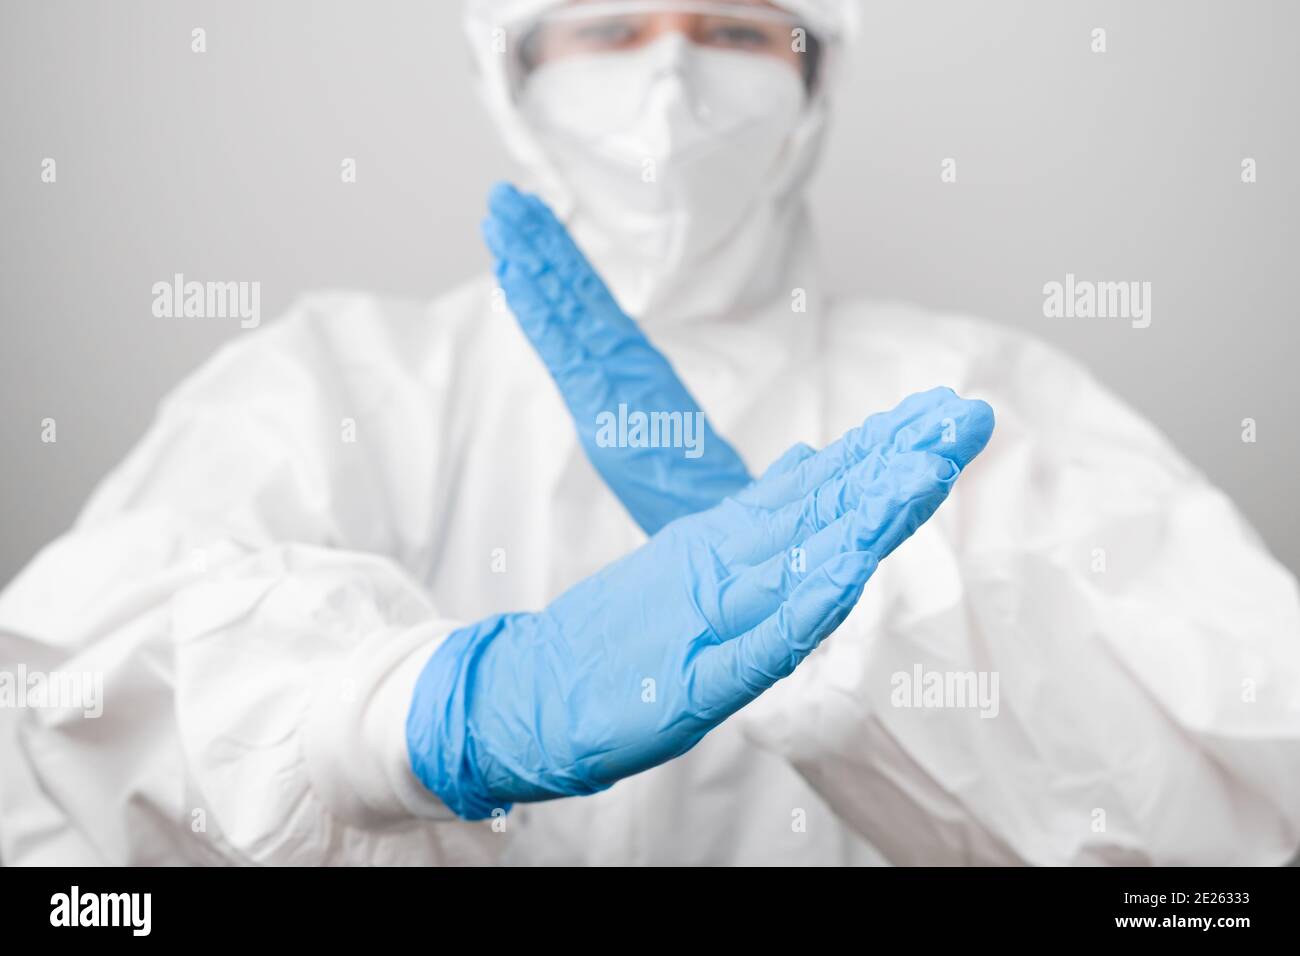 Medico in una tuta protettiva contro il rischio biologico e maschera protettiva contro il coronavirus, Sars-Cov-2, Covid-19 in guanti di gomma blu. Foto Stock